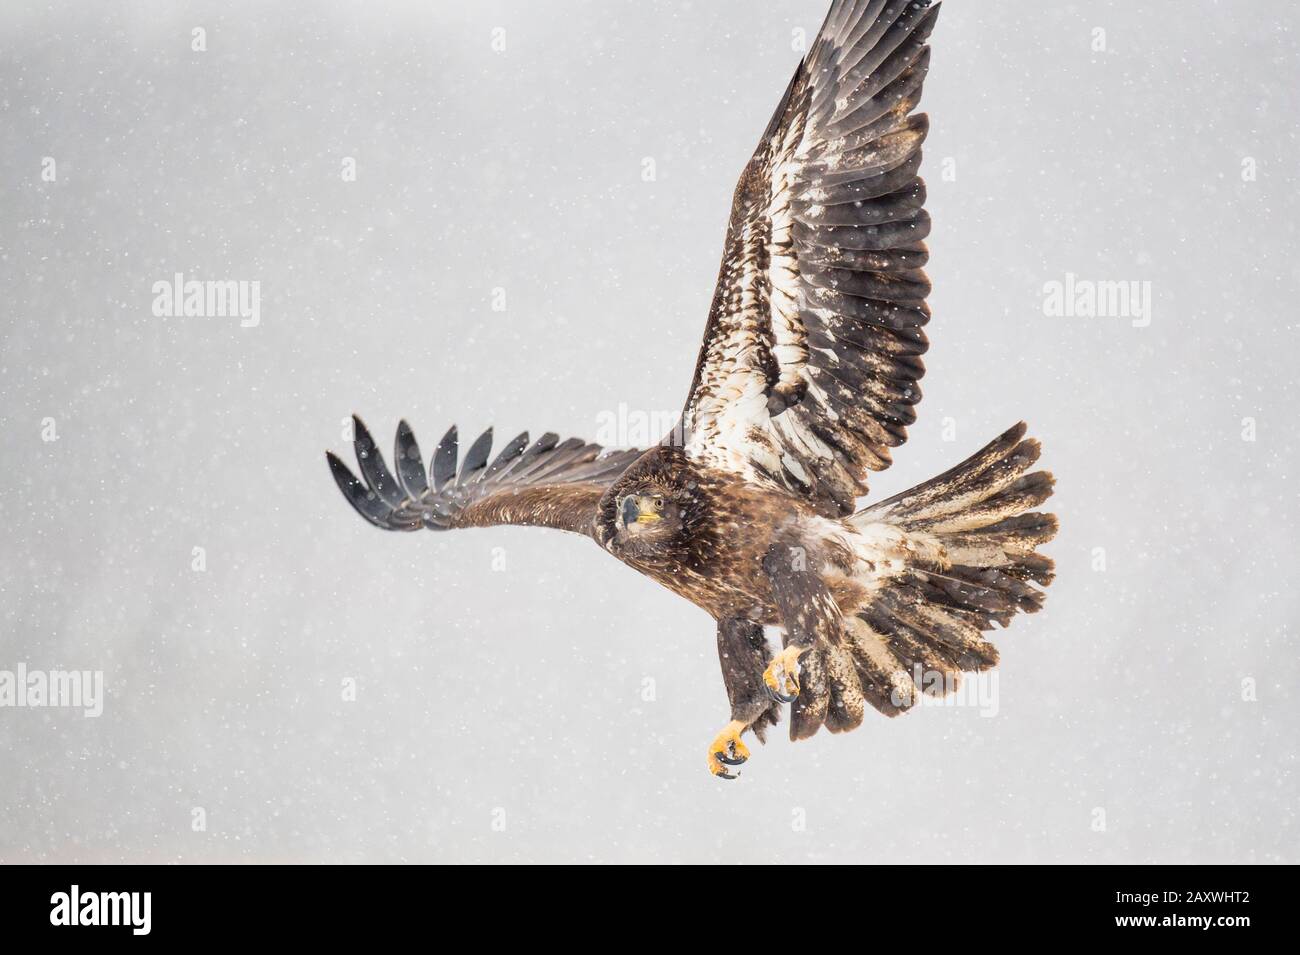 Ein juveniler Bald-Adler fliegt an einem kalten Wintertag im fallenden Schnee über ein offenes Feld. Stockfoto